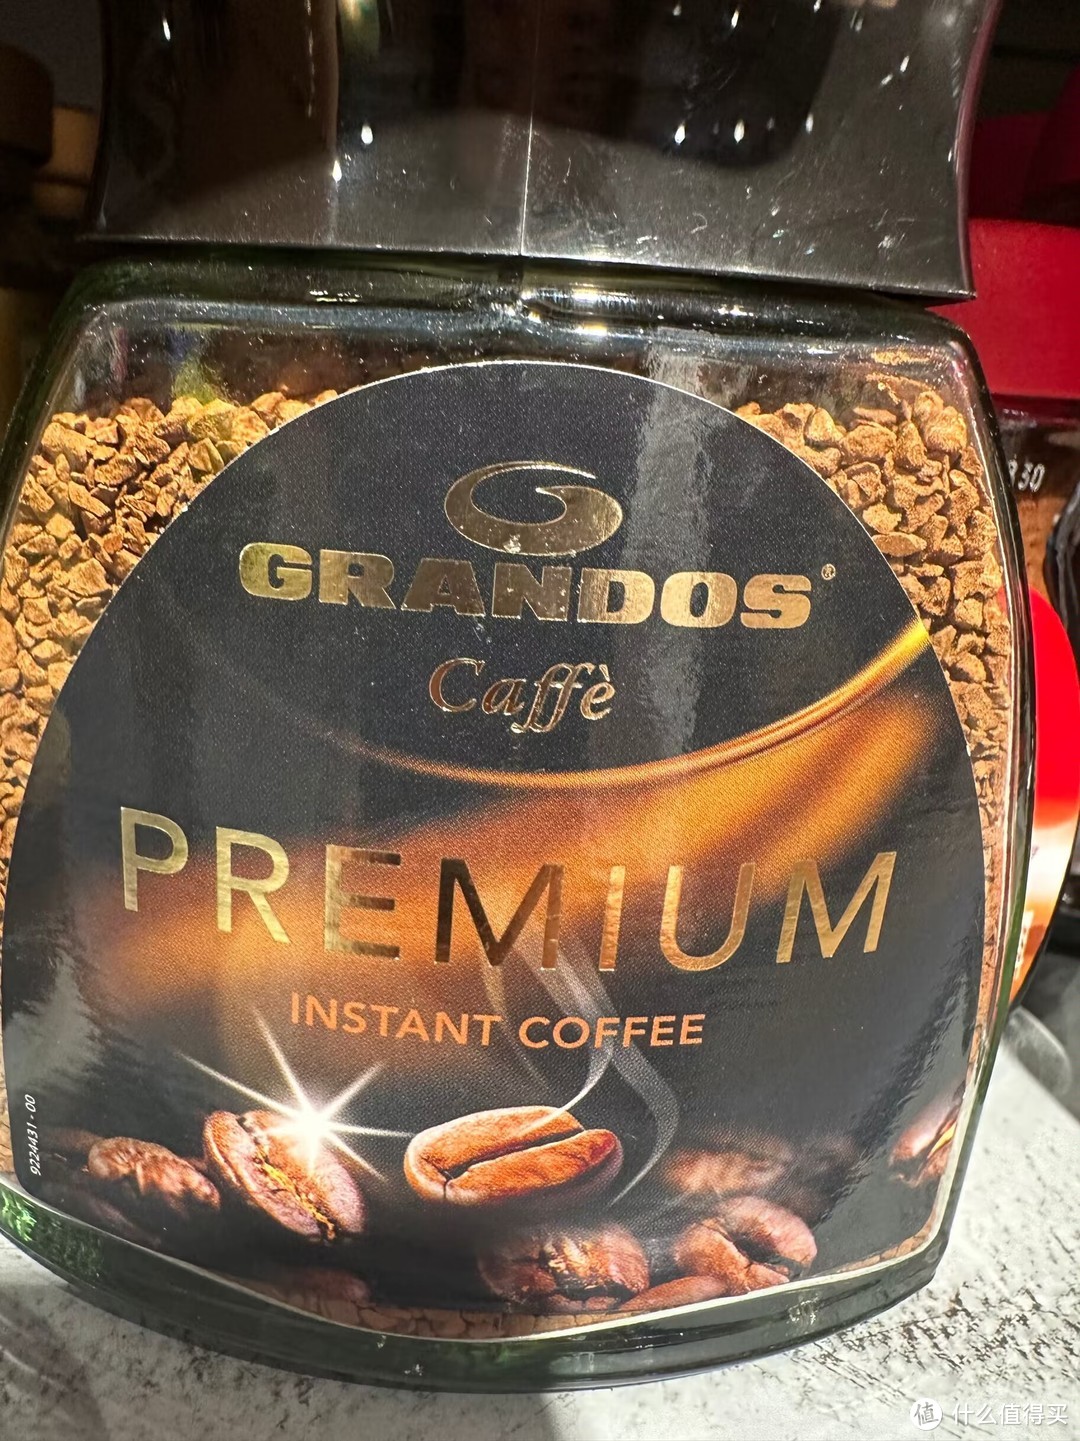 格兰特德国原装进口速溶冻干纯黑咖啡